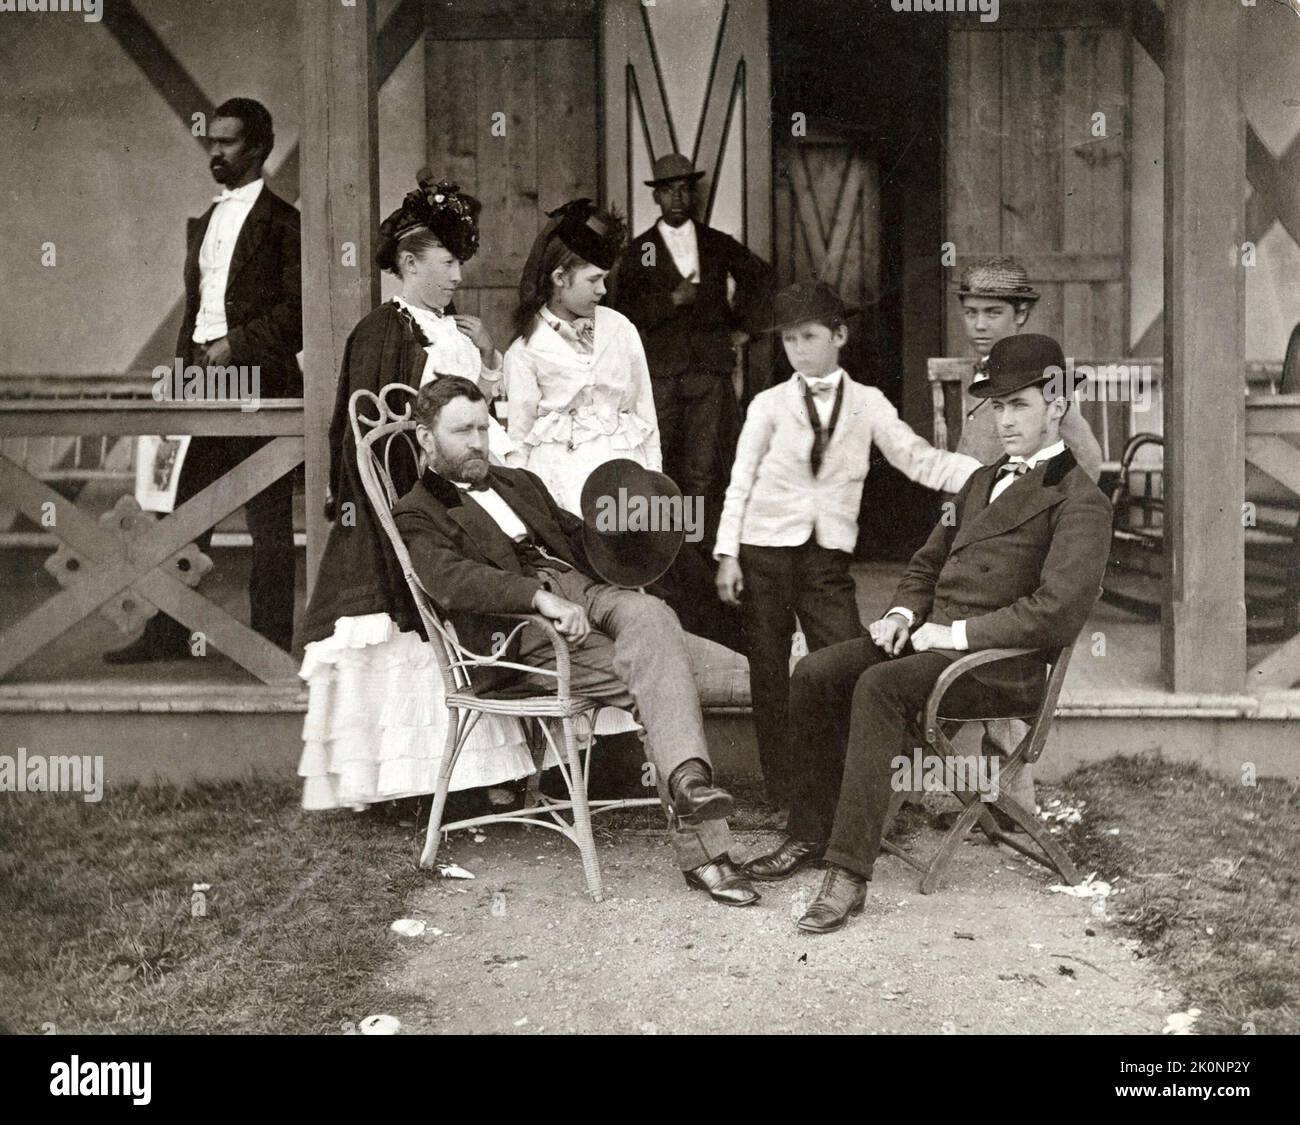 Le président Ulysses Grant et son épouse, Julia Dent Grant, et leurs quatre enfants; Jesse, Ulysses Jr., Ellen (connue sous le nom de Nellie), et Frederick devant leur chalet. Deux hommes noirs sont également présents, dont les identités sont inconnues. Banque D'Images